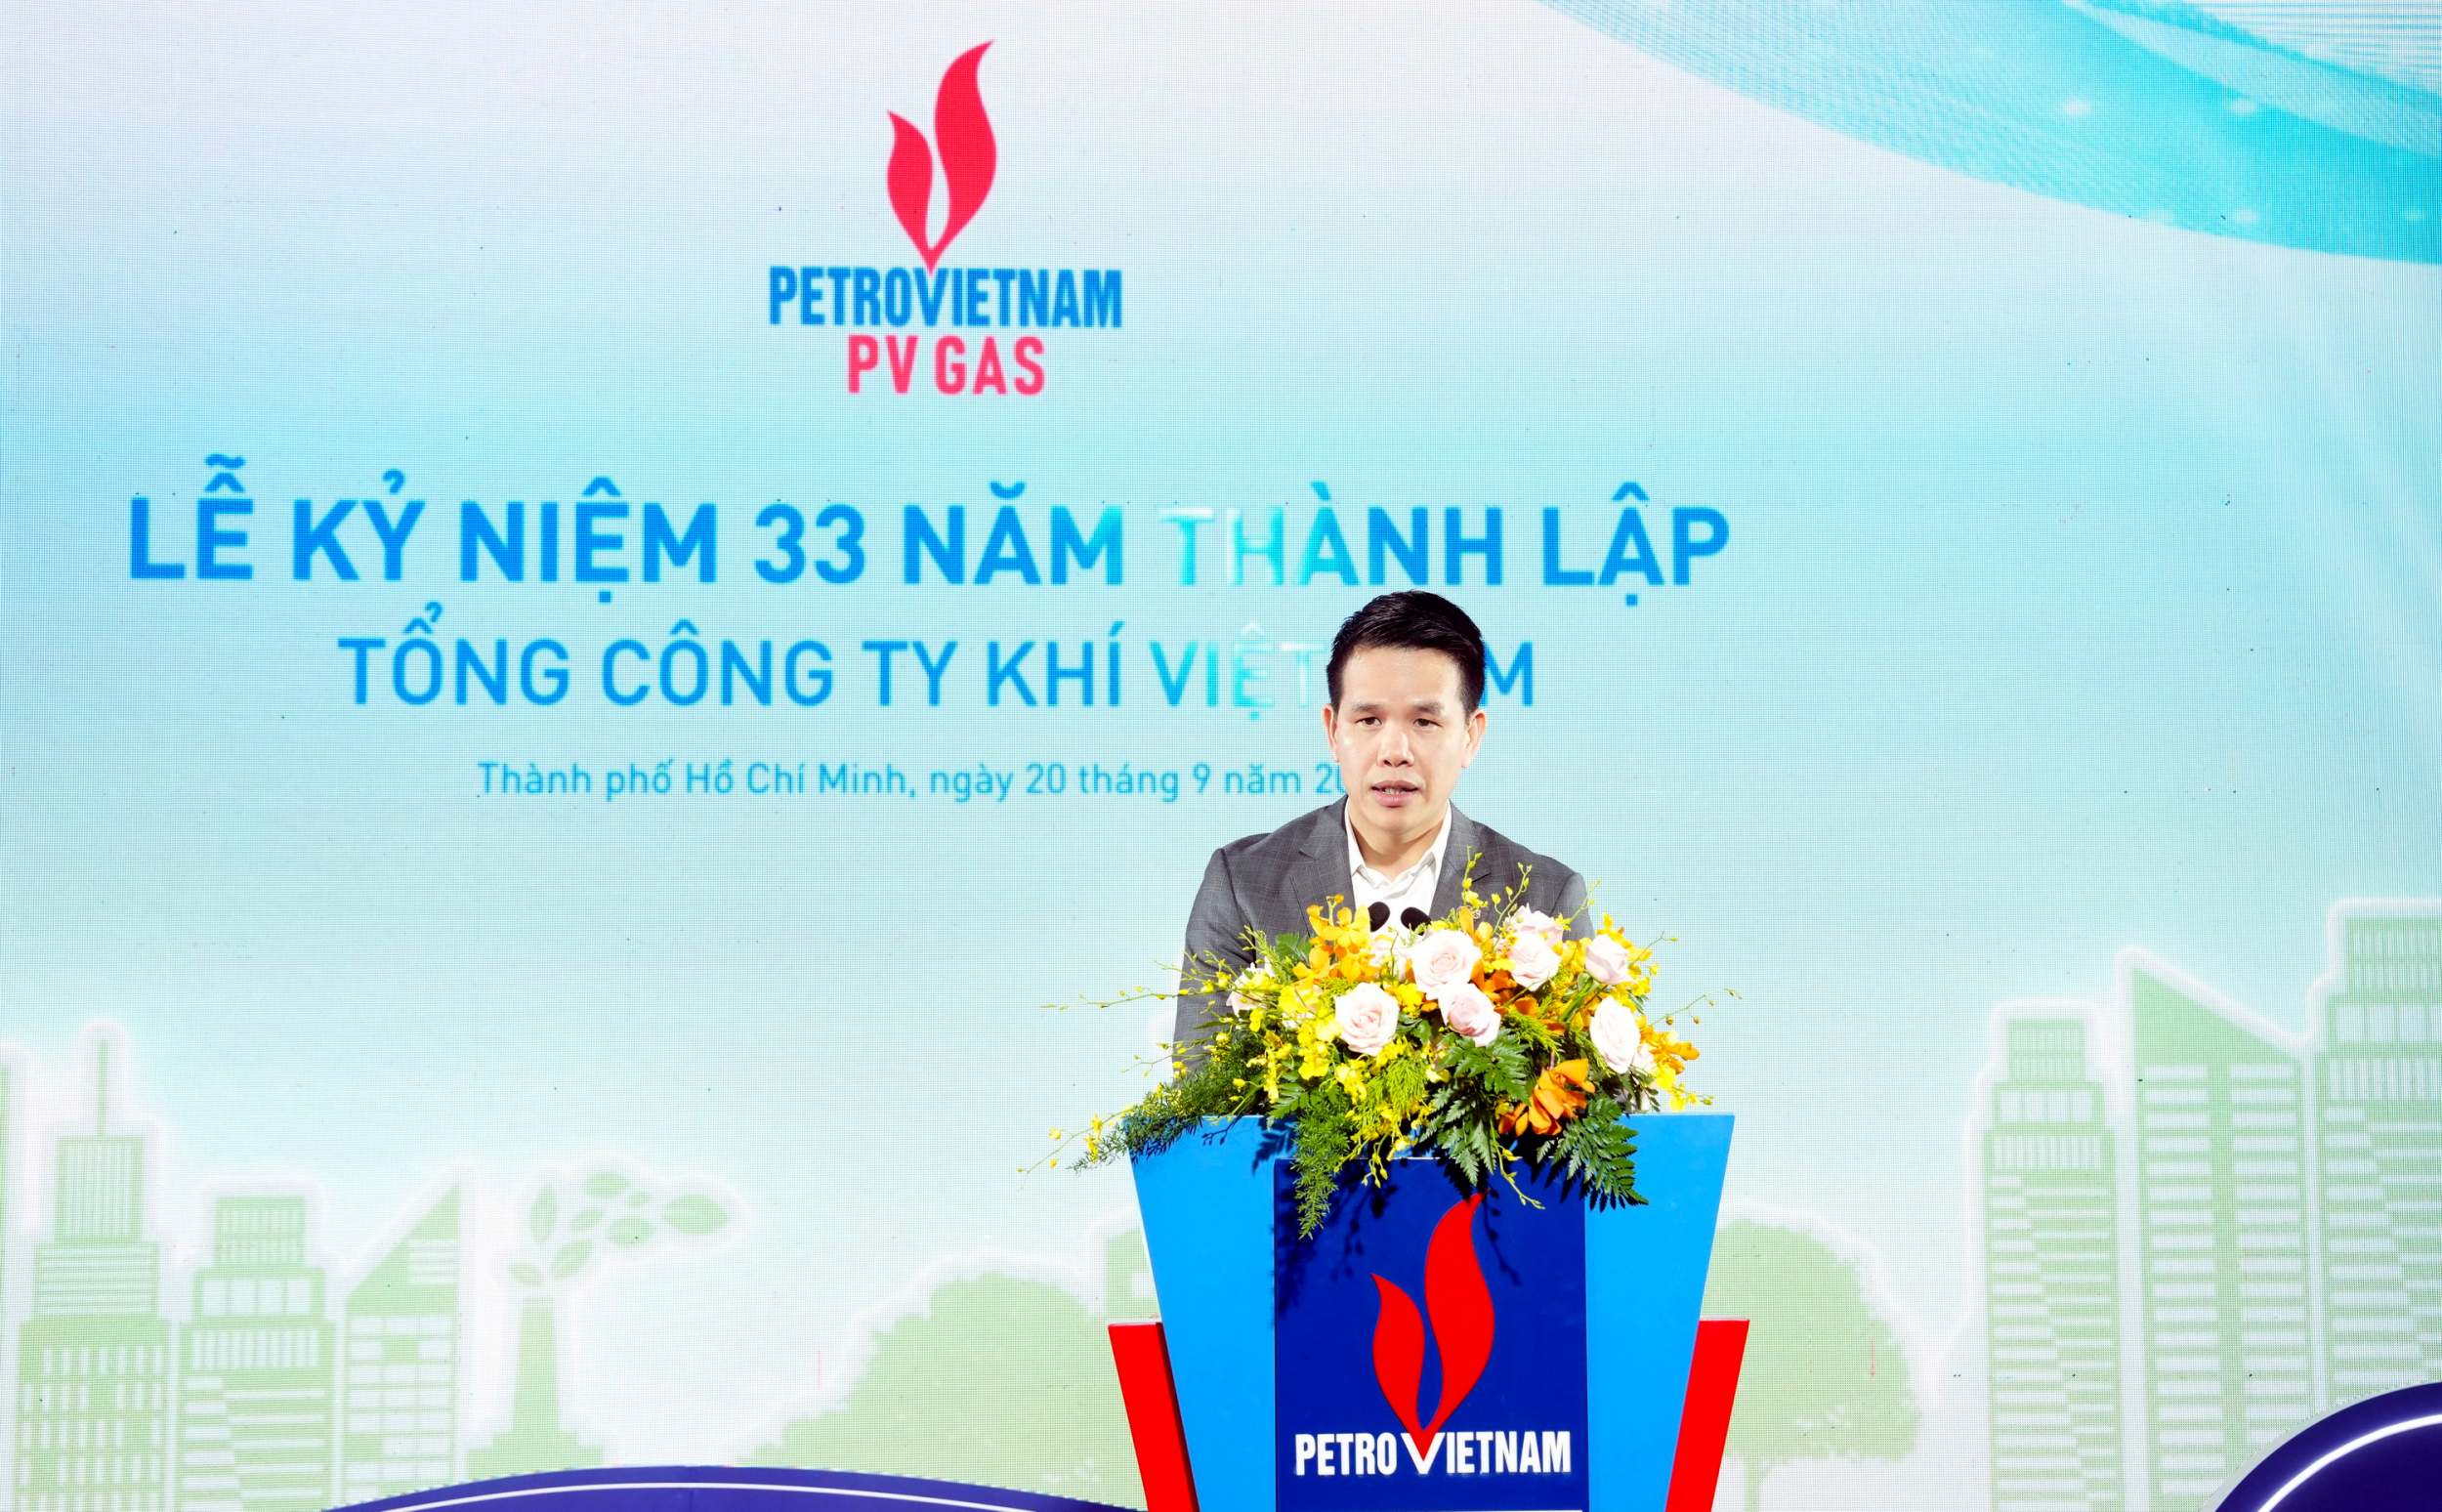 Phát biểu chúc mừng tuổi 33 của PV GAS, đồng chí Phạm Văn Phong, Phó Bí thư Đảng ủy, Thành viên Hội đồng Quản trị, Tổng Giám đốc khẳng định hành trình bền bỉ, đầy vẻ vang, đáng tự hào của những thế hệ CBCNV - NLĐ PV GAS